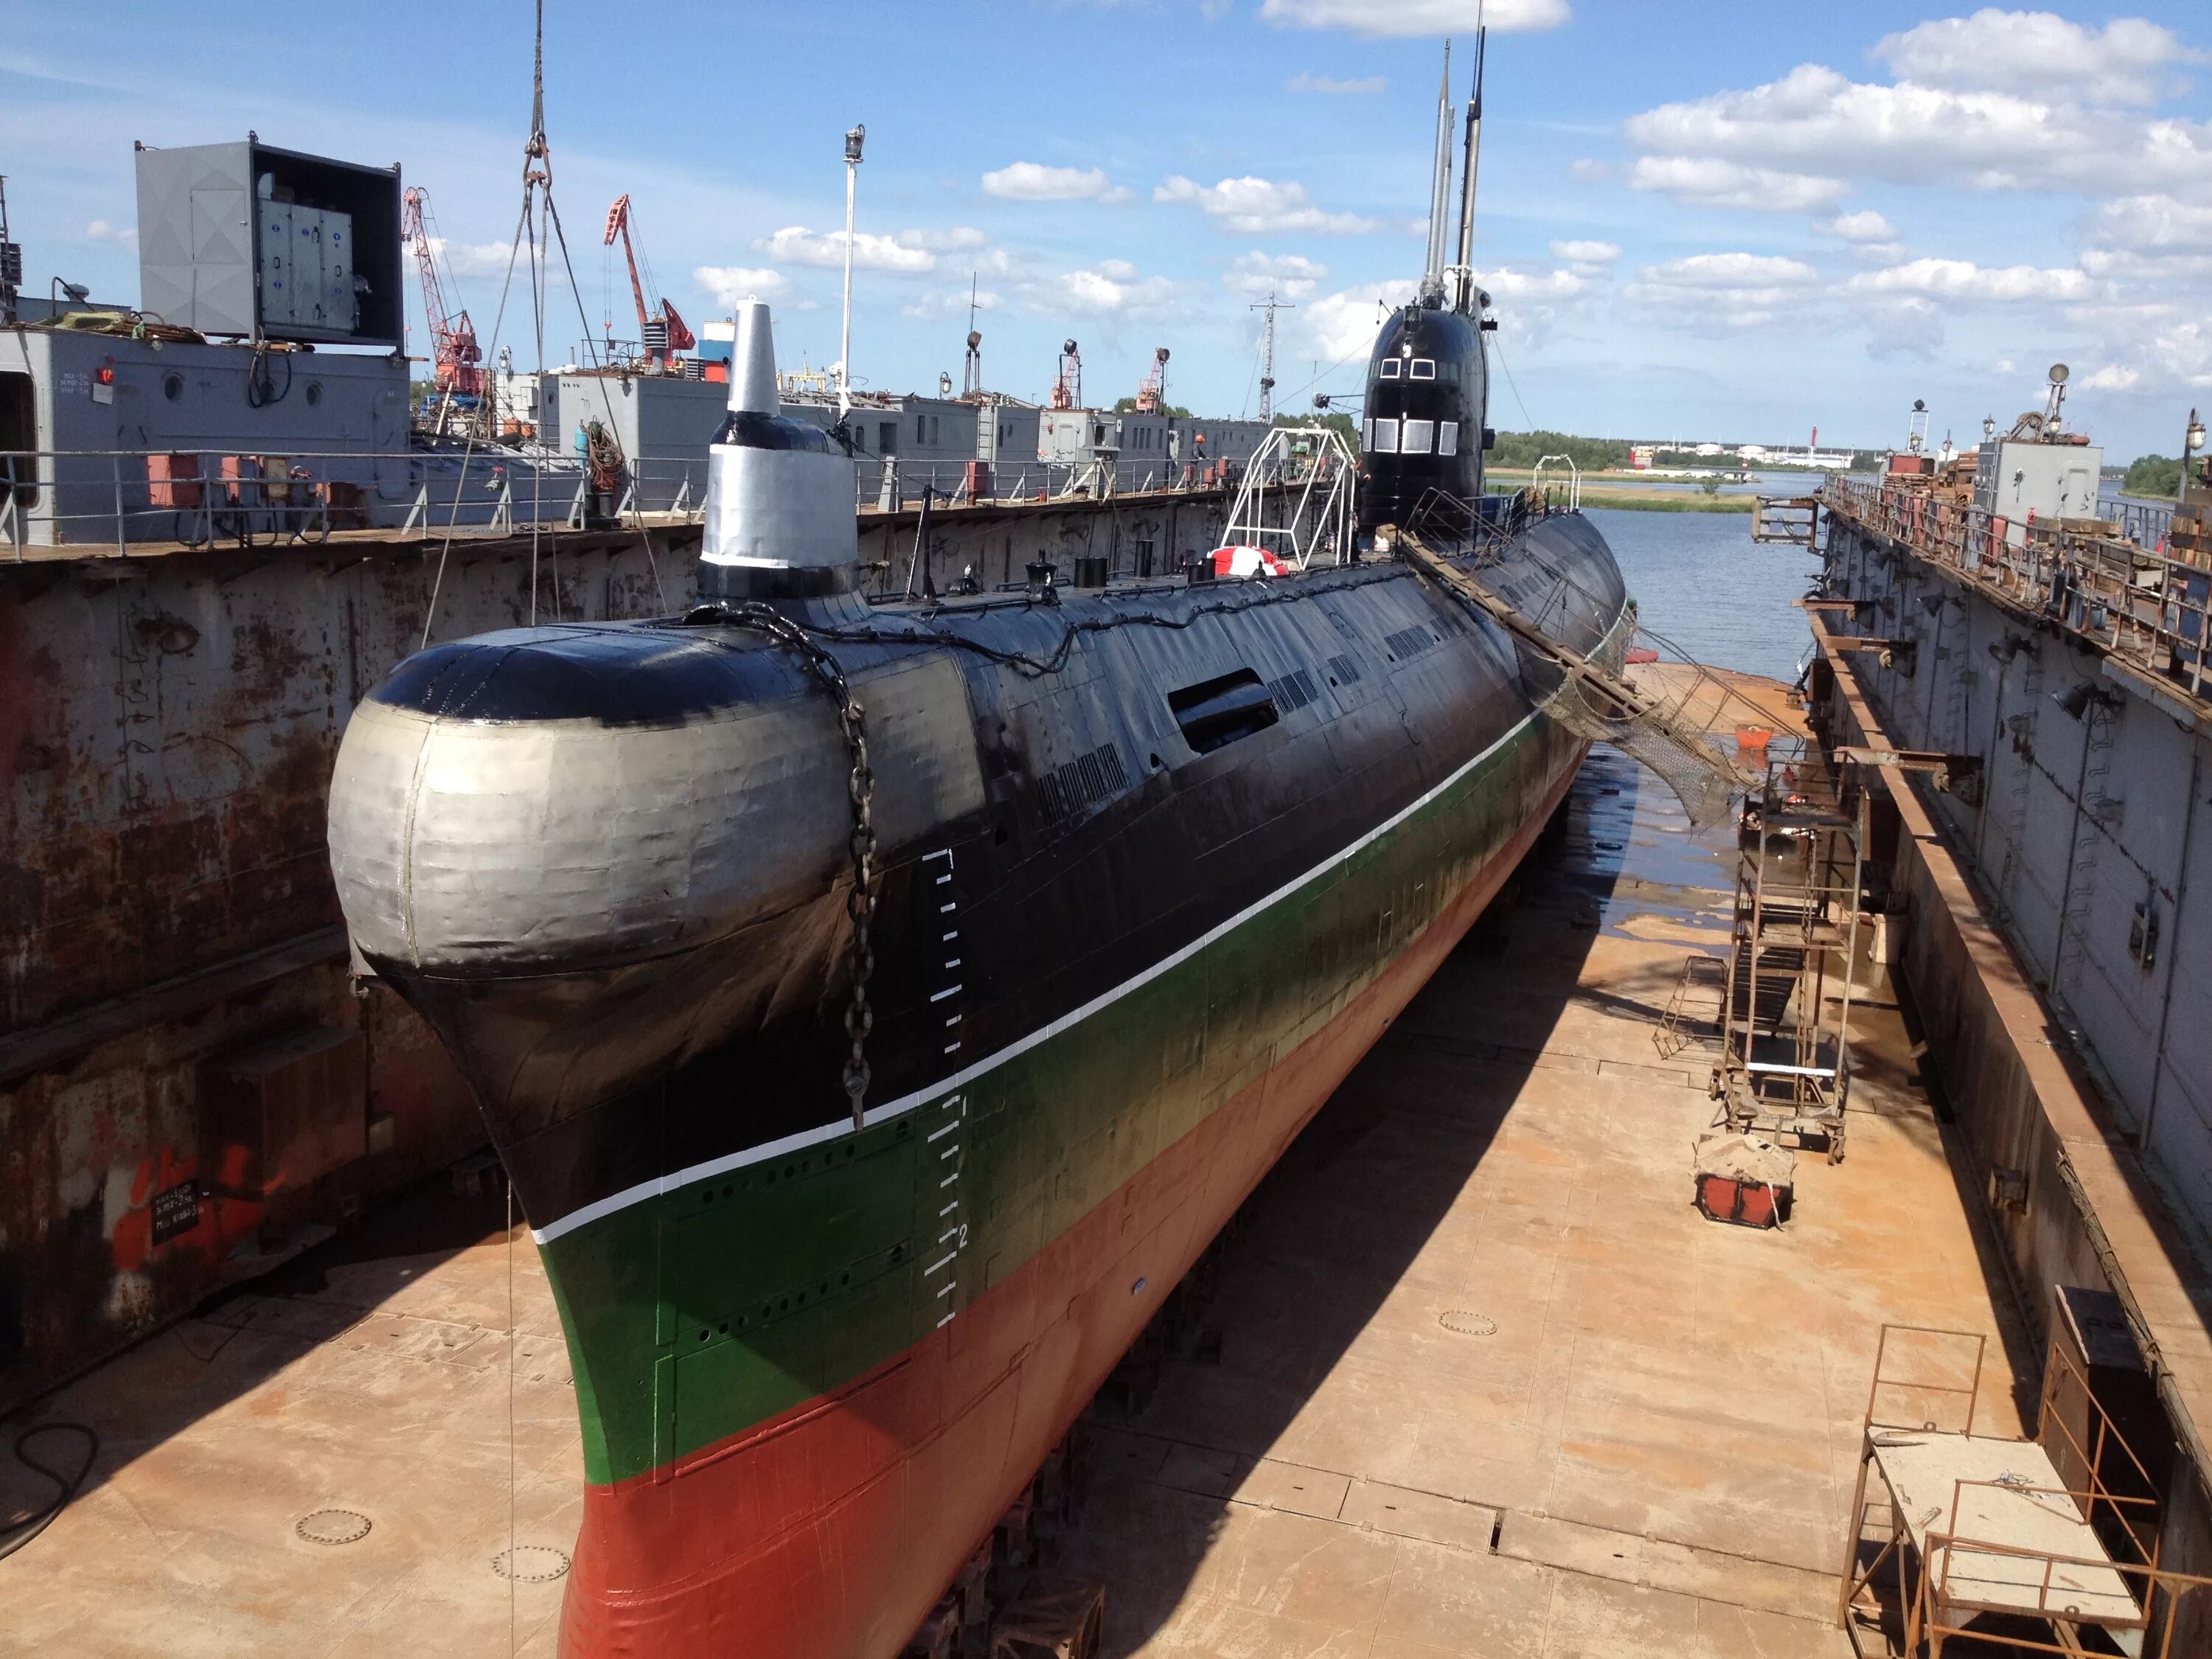 641б подводная лодка. Подводная лодка-музей «б-413». Подводная лодка б-413 проекта 641. Подводной лодки проекта 641 в доке. Пл 00